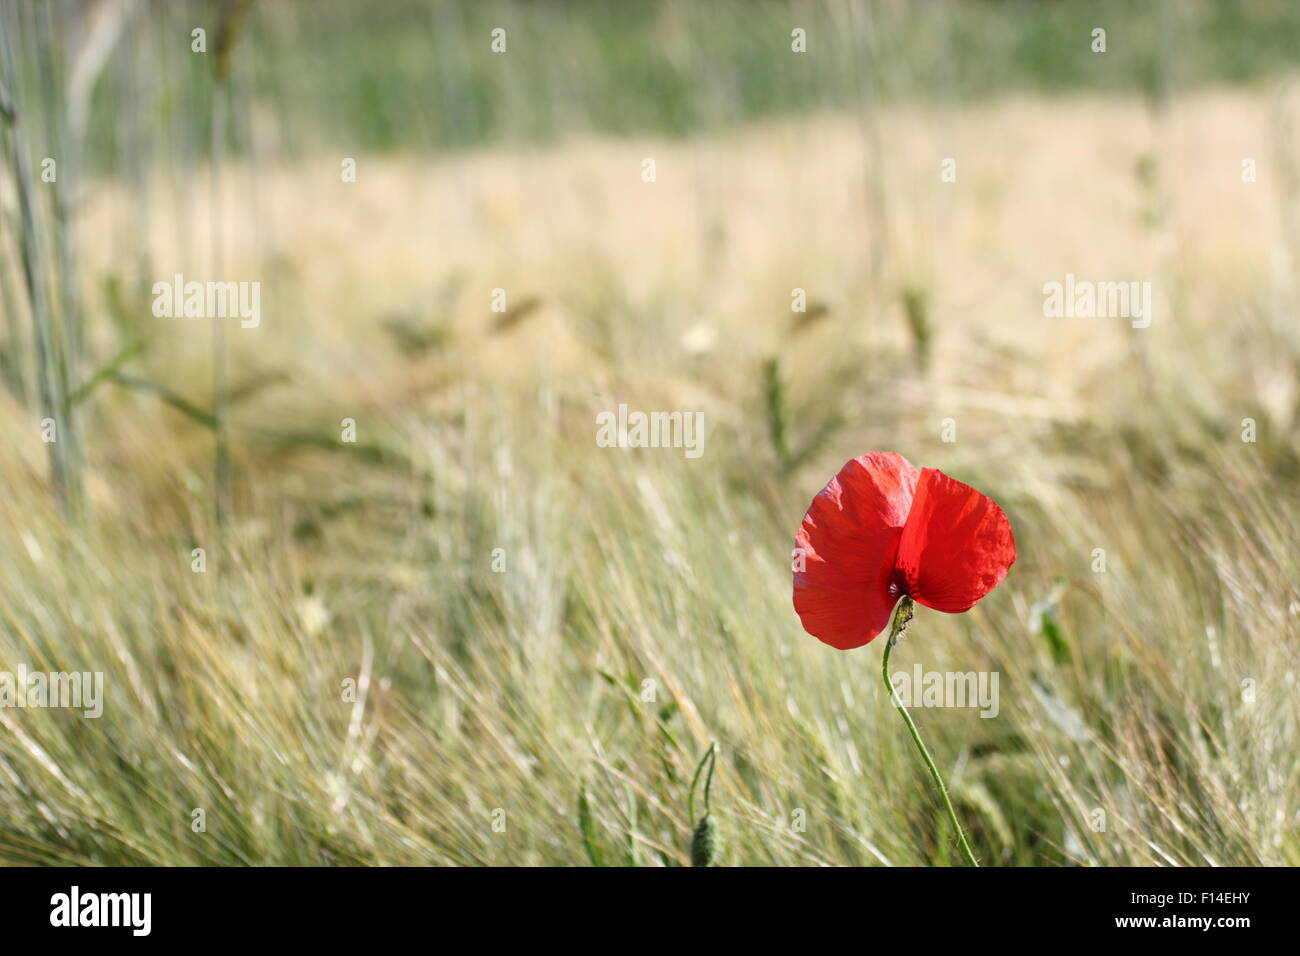 Vista minimalista de un hermoso color rojo amapola que crece en un maíz cultivado presentaron Foto de stock